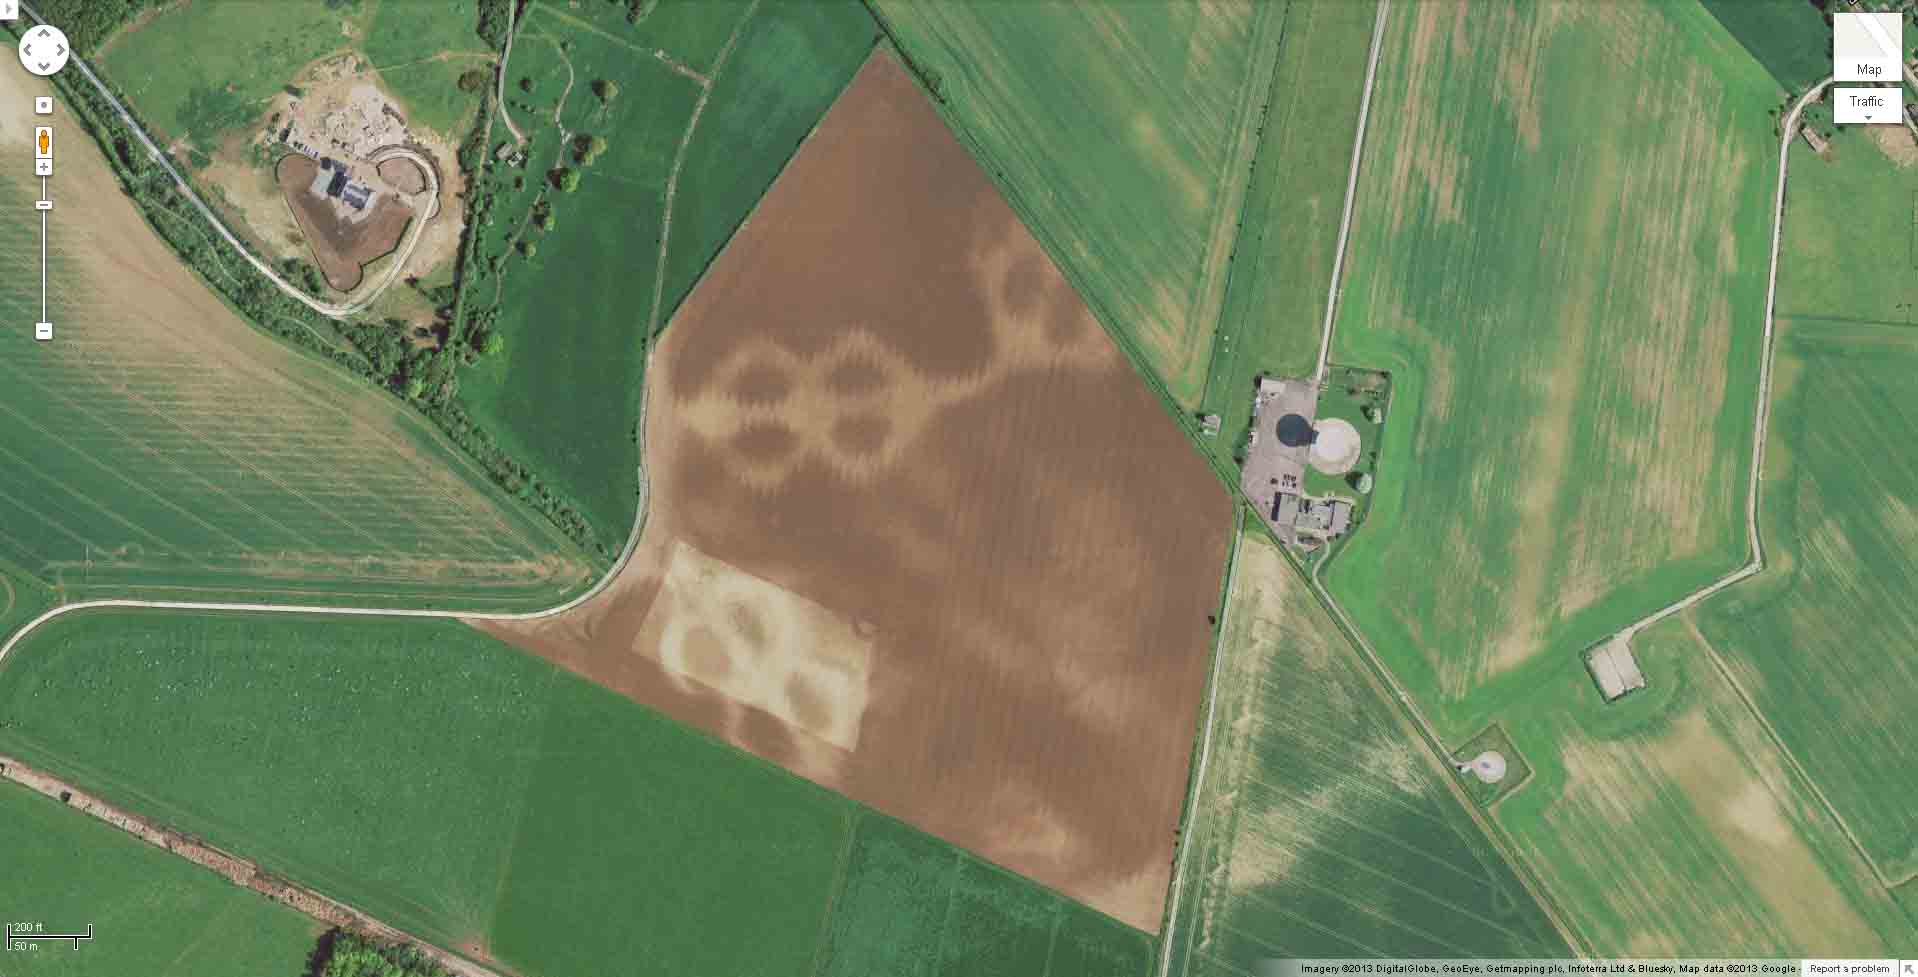 Google Image of Wheat Field Taken Jan. 2013